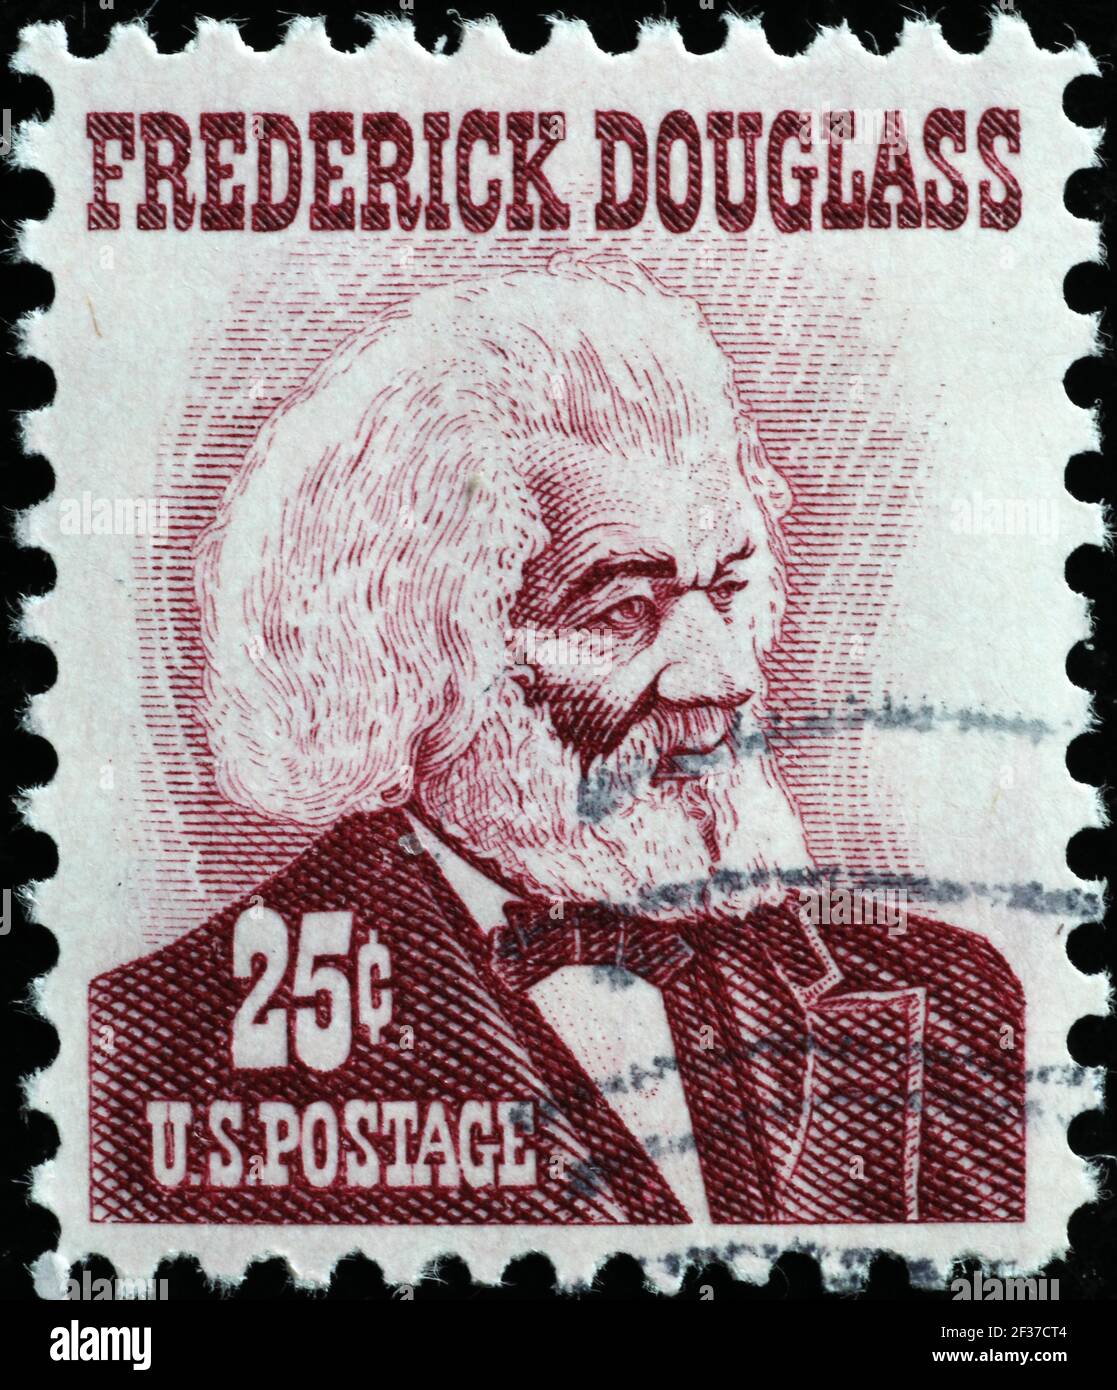 El abolicionista Frederick Douglass en sello americano vintage Foto de stock